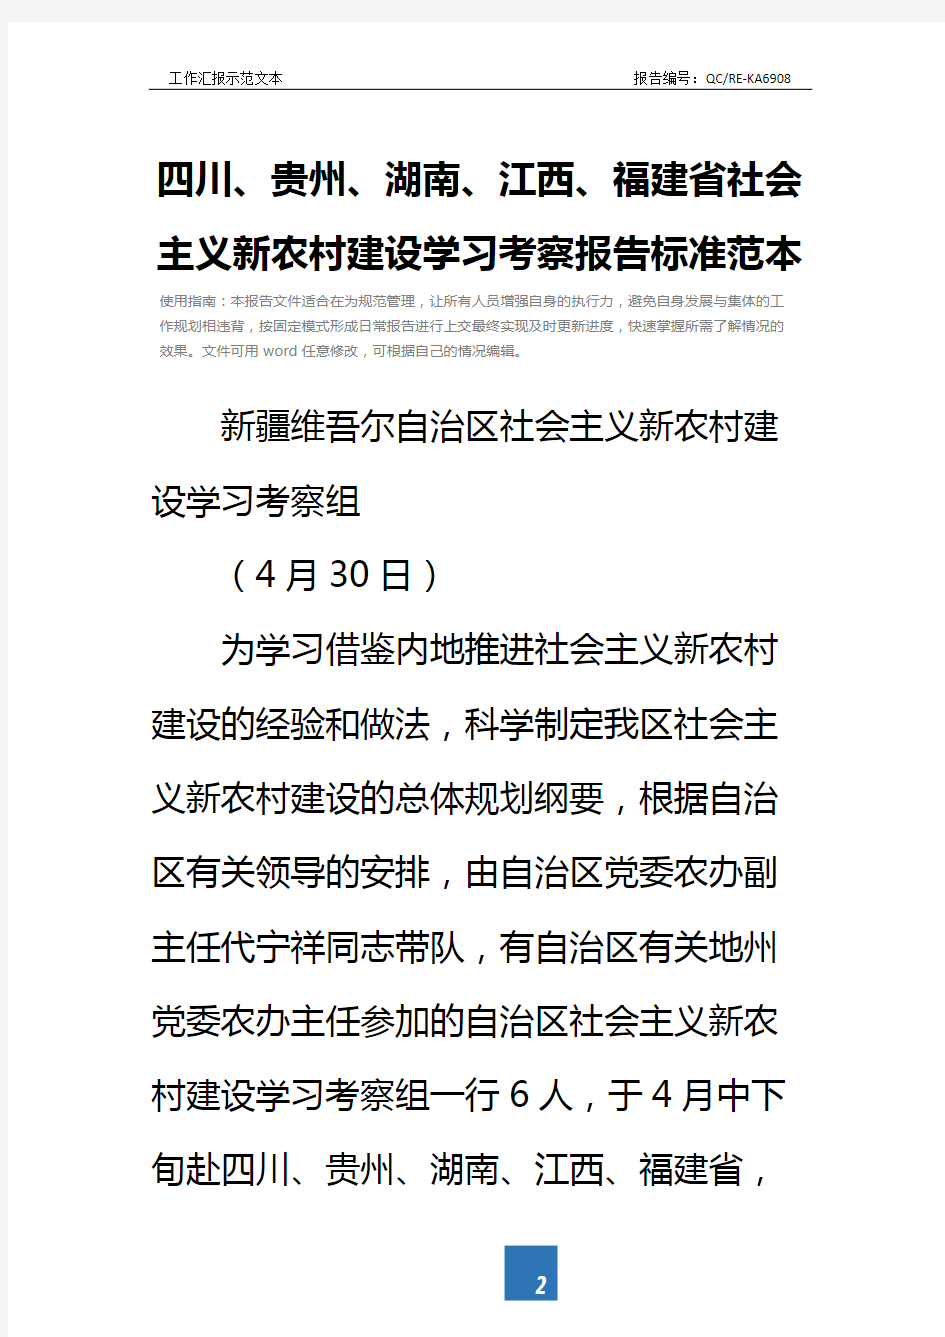 四川、贵州、湖南、江西、福建省社会主义新农村建设学习考察报告标准范本